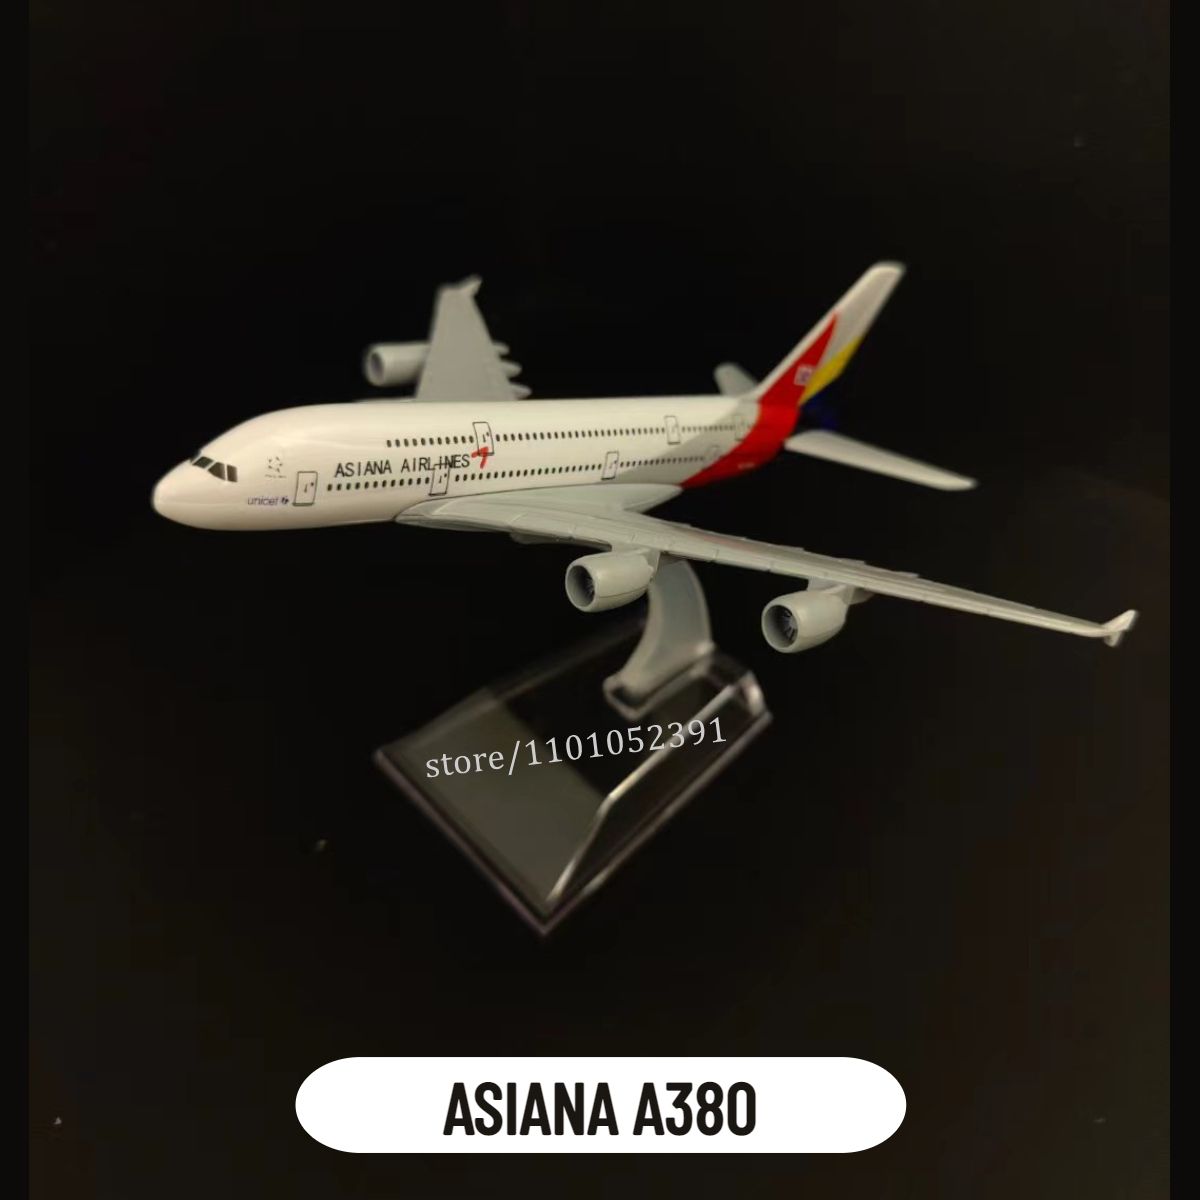 7. 아시아나 A380